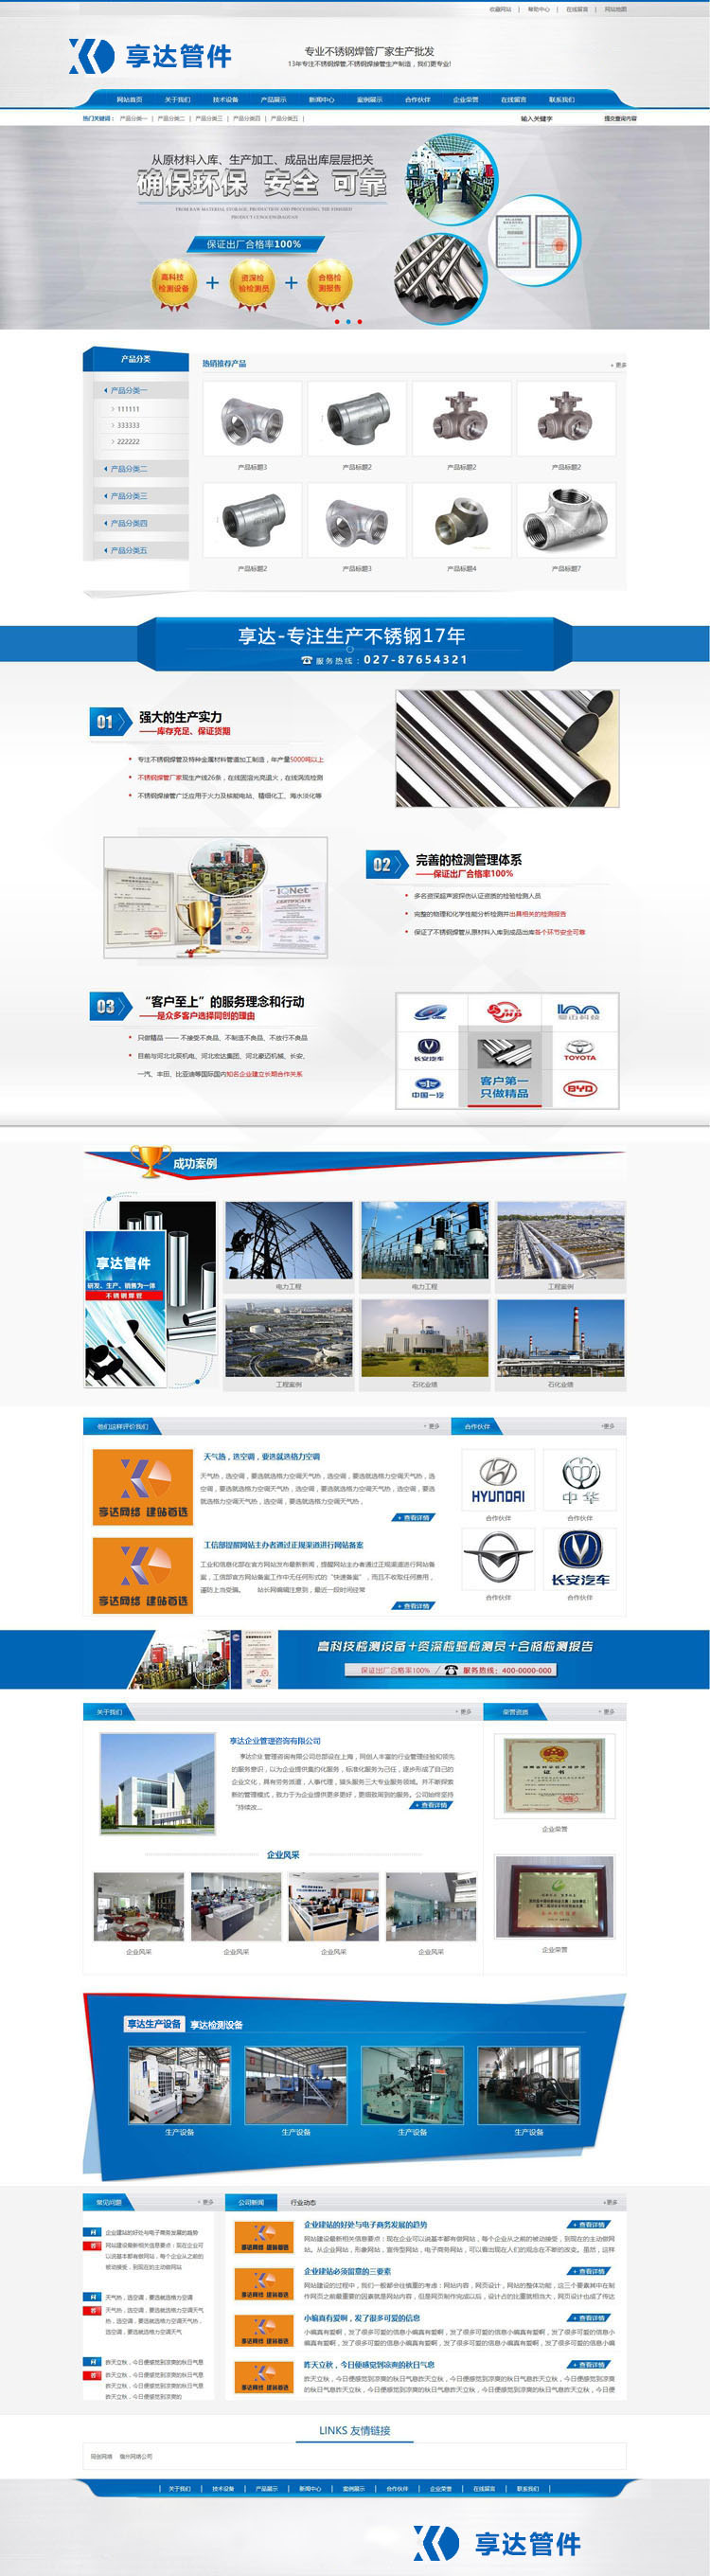 北京管道配件设备公司企业网站设计 | 管道扣件生产厂家企业网站定制